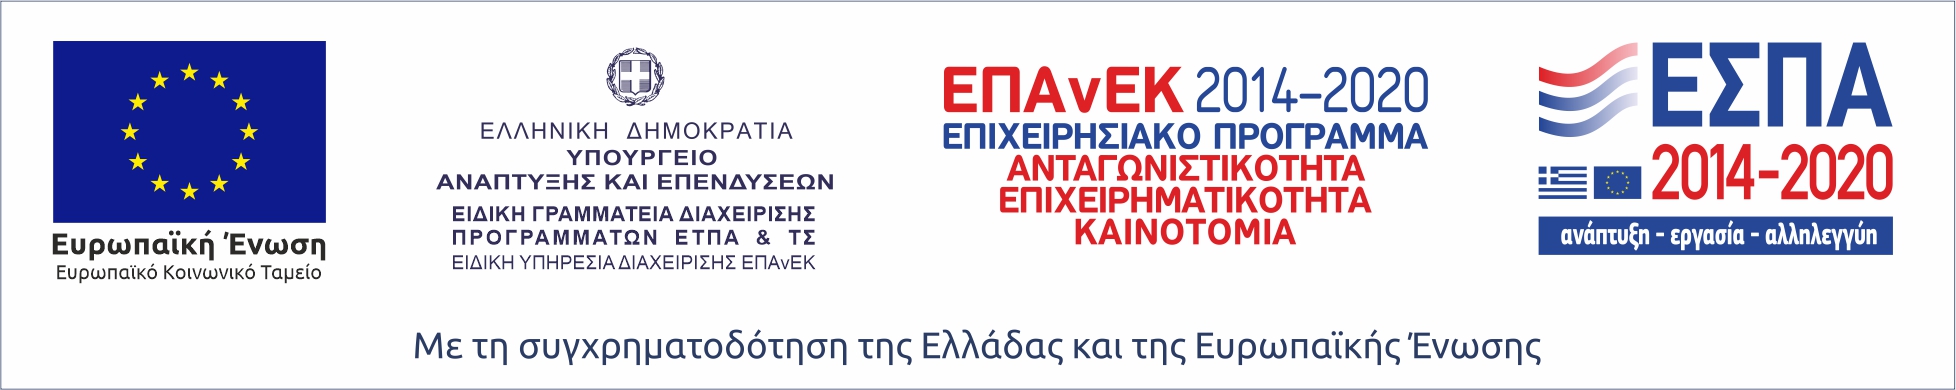 Ε.Σ.Π.Α. Logo